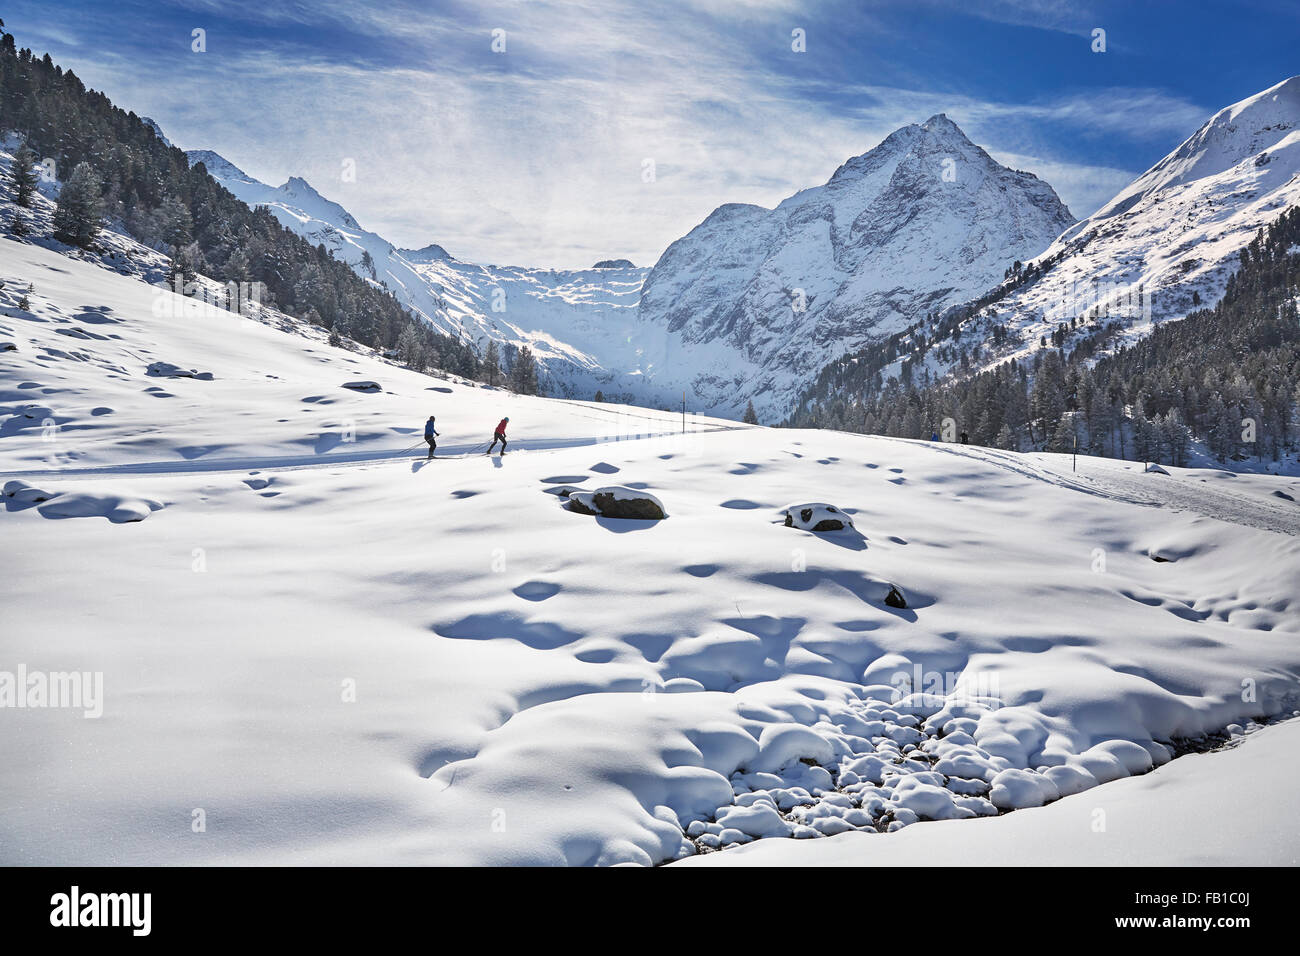 Gli amanti dello sci di fondo, sci di fondo, Seilrain, Sellraintal, Alpi dello Stubai, Tirolo, Austria Foto Stock